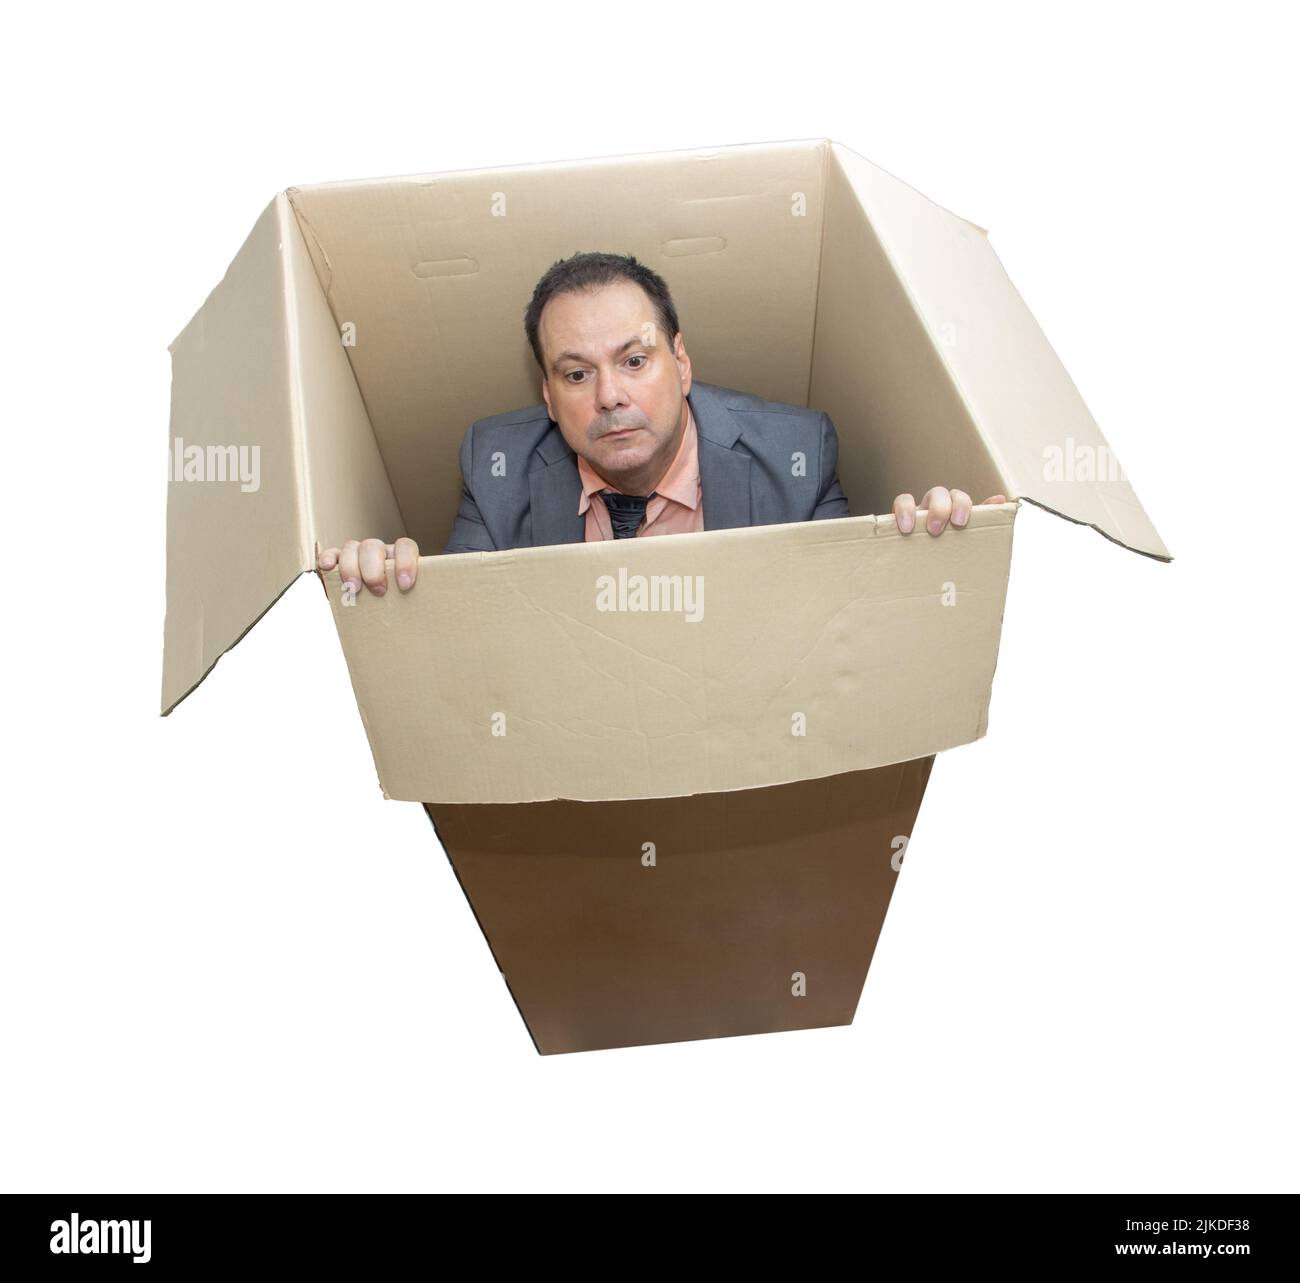 Un homme en costume se tient à l'intérieur d'une boîte en carton et essaie de regarder dehors, isolé sur fond blanc Banque D'Images